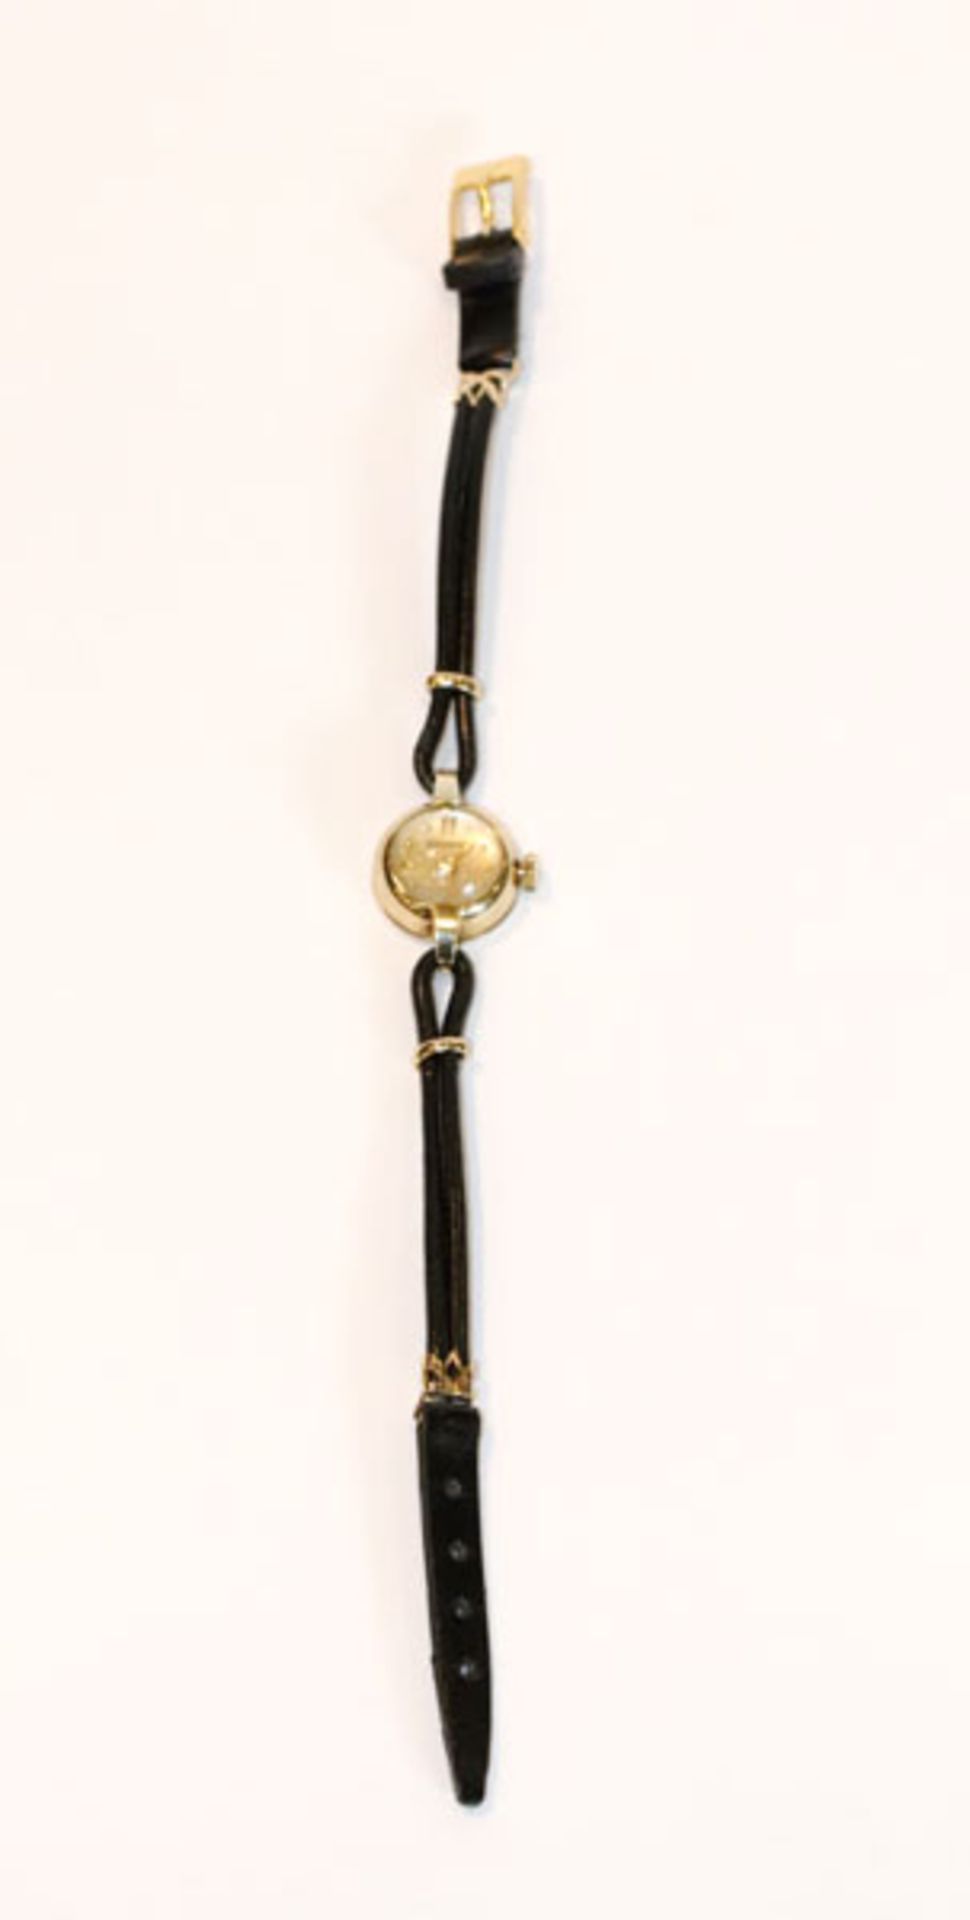 14 k Gelbgold Damen-Armbanduhr in runder Form an schwarzem Armband, L 20 cm, Funktion nicht geprüft